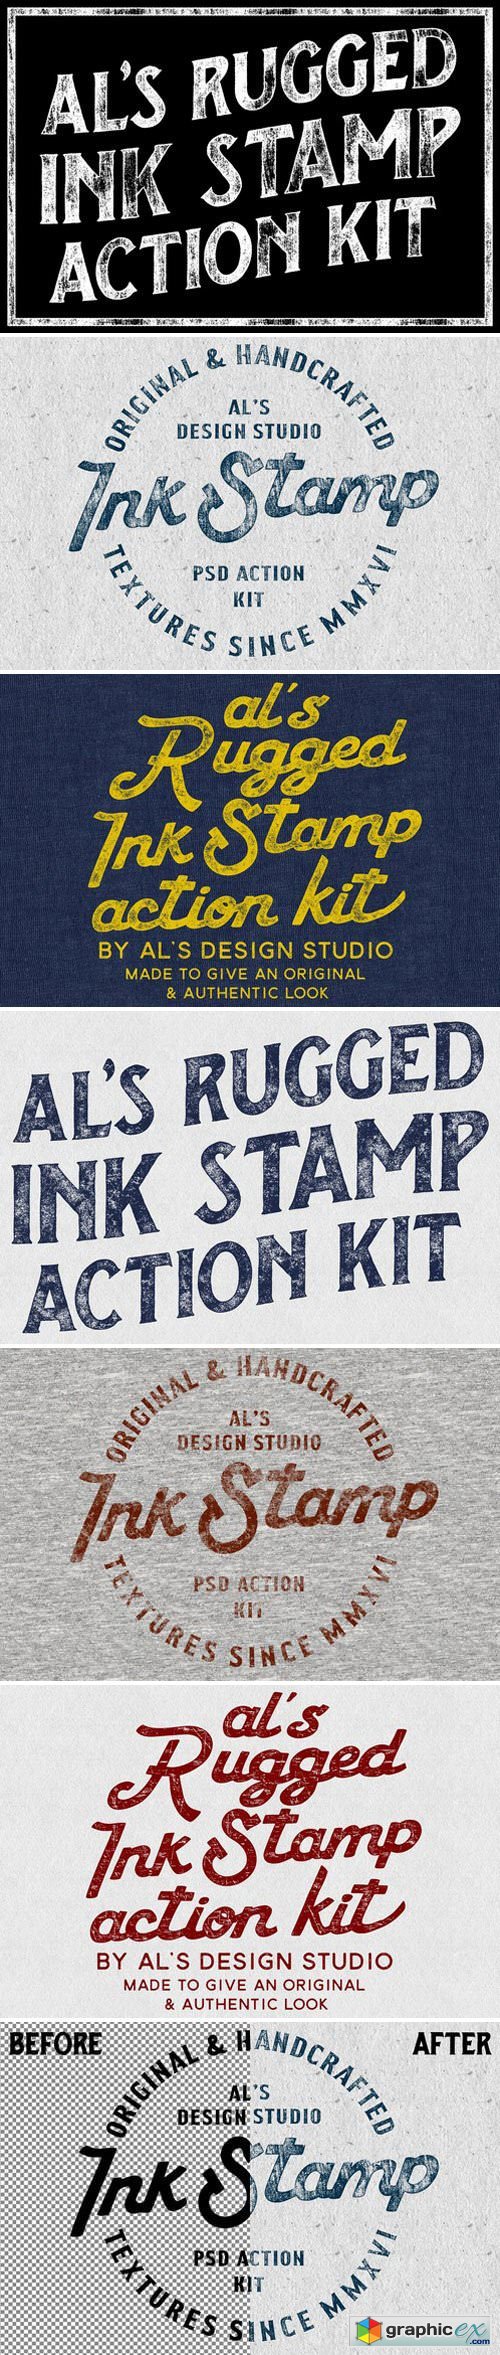 AL's Rugged Ink Stamp Action Kit